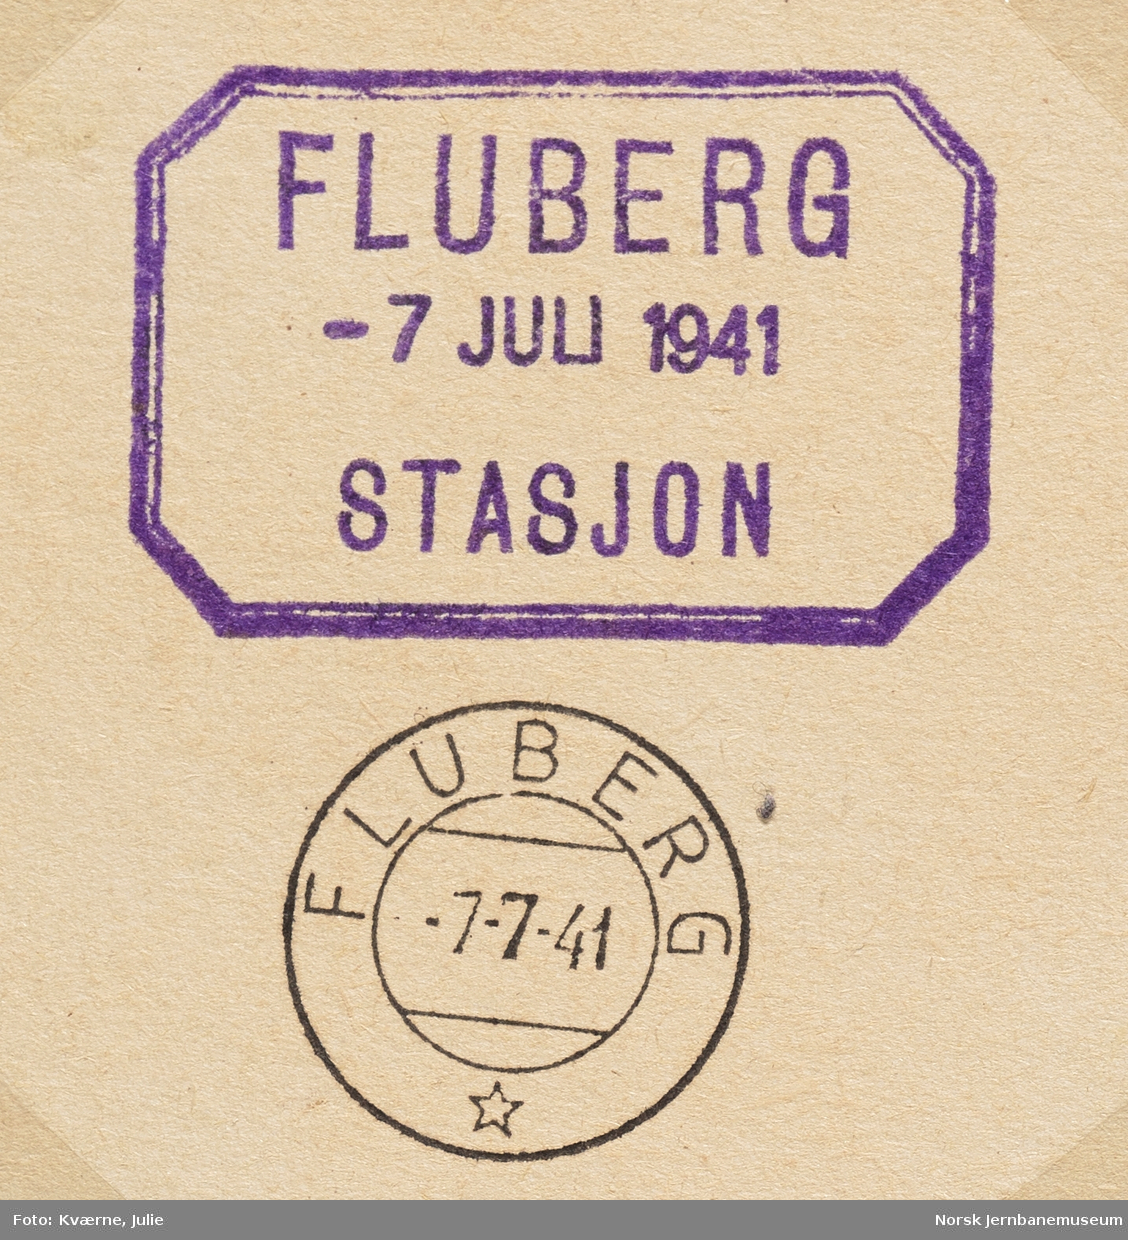 Post- og datostempelavtrykk fra Fluberg stasjon